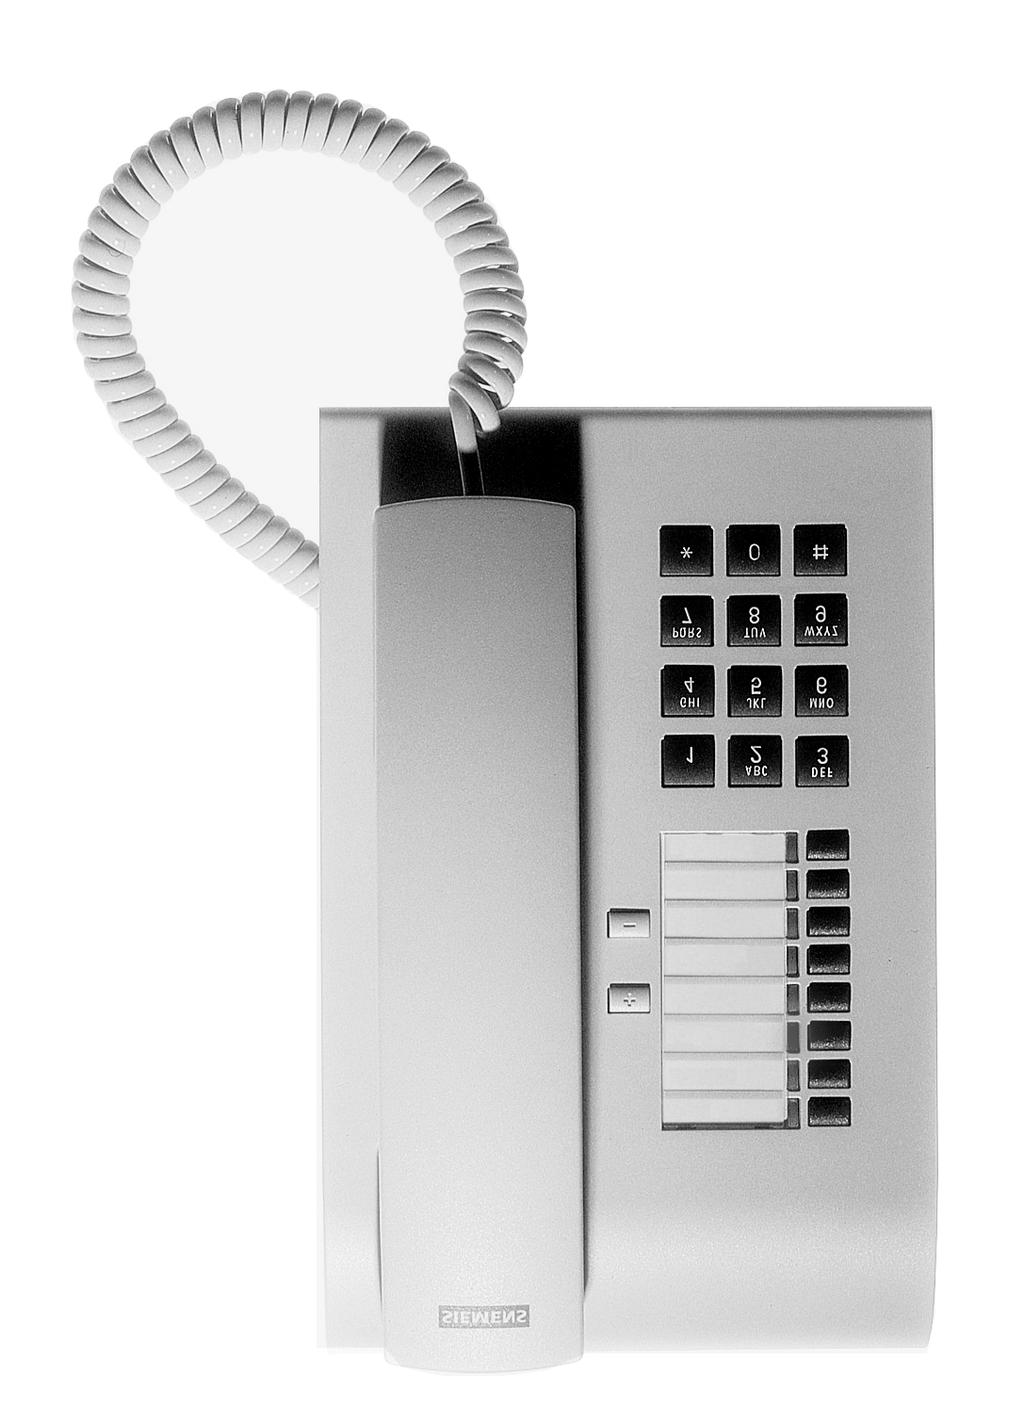 The optiset E basic Telephone Speaker f ring tones Keys f telephone settings Handset LEDs Eight fixed function keys: Consultation Redial Message Waiting Callback